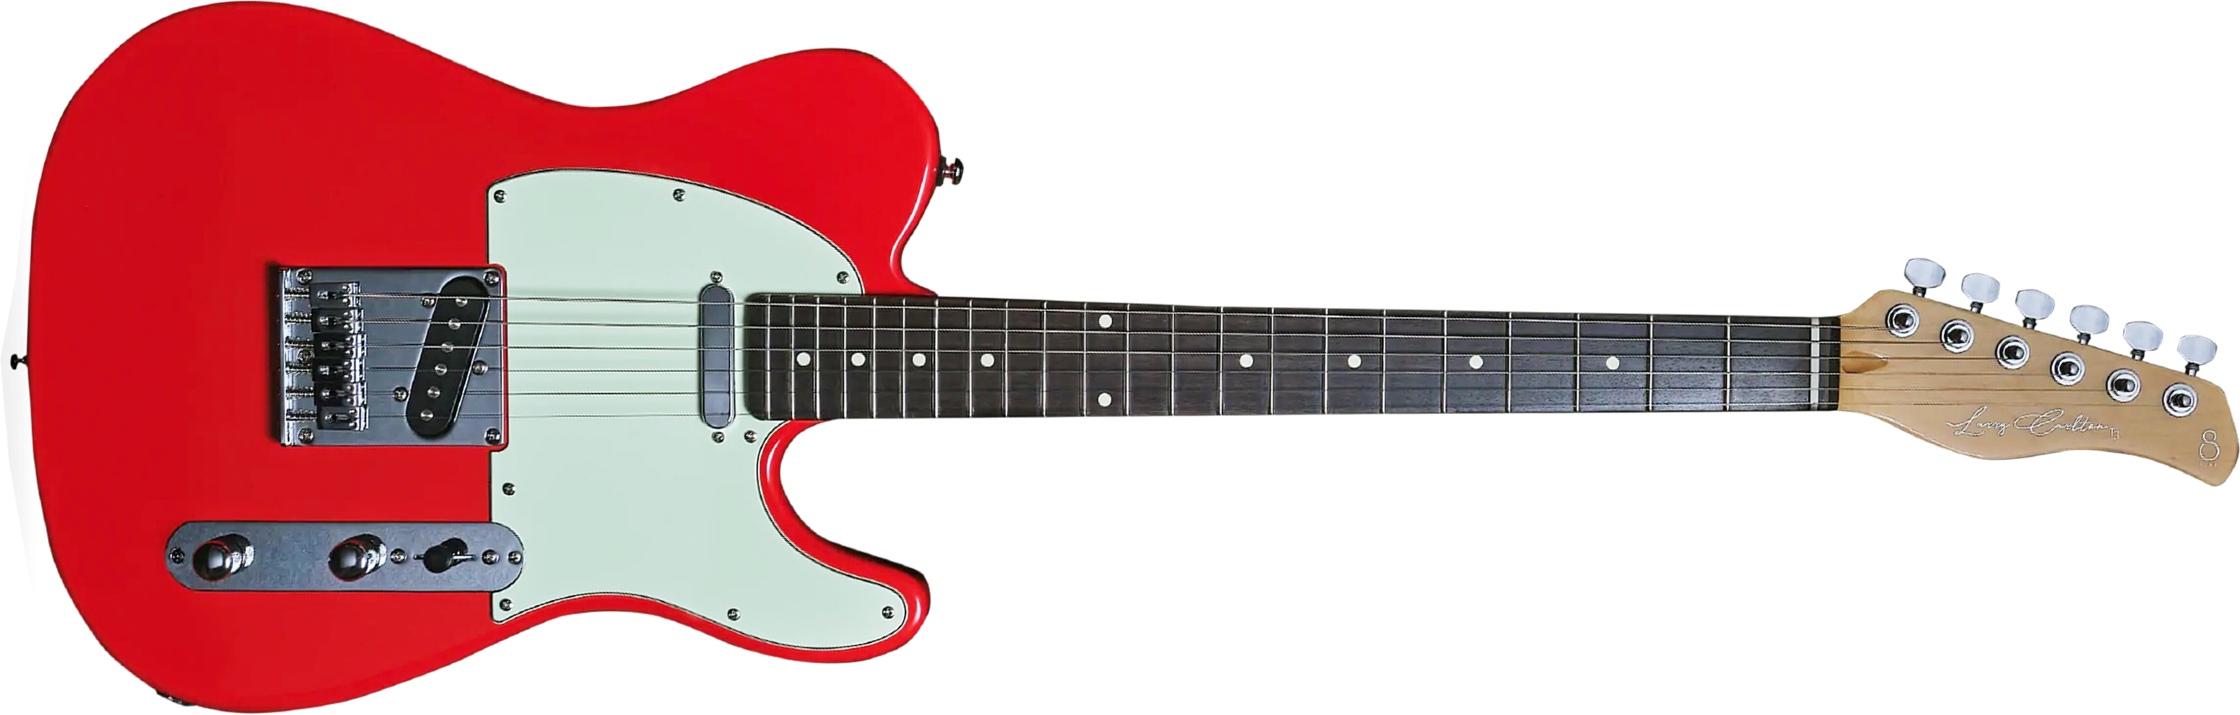 Sire Larry Carlton T3 Signature 2s Ht Rw - Dakota Red - E-Gitarre in Teleform - Main picture